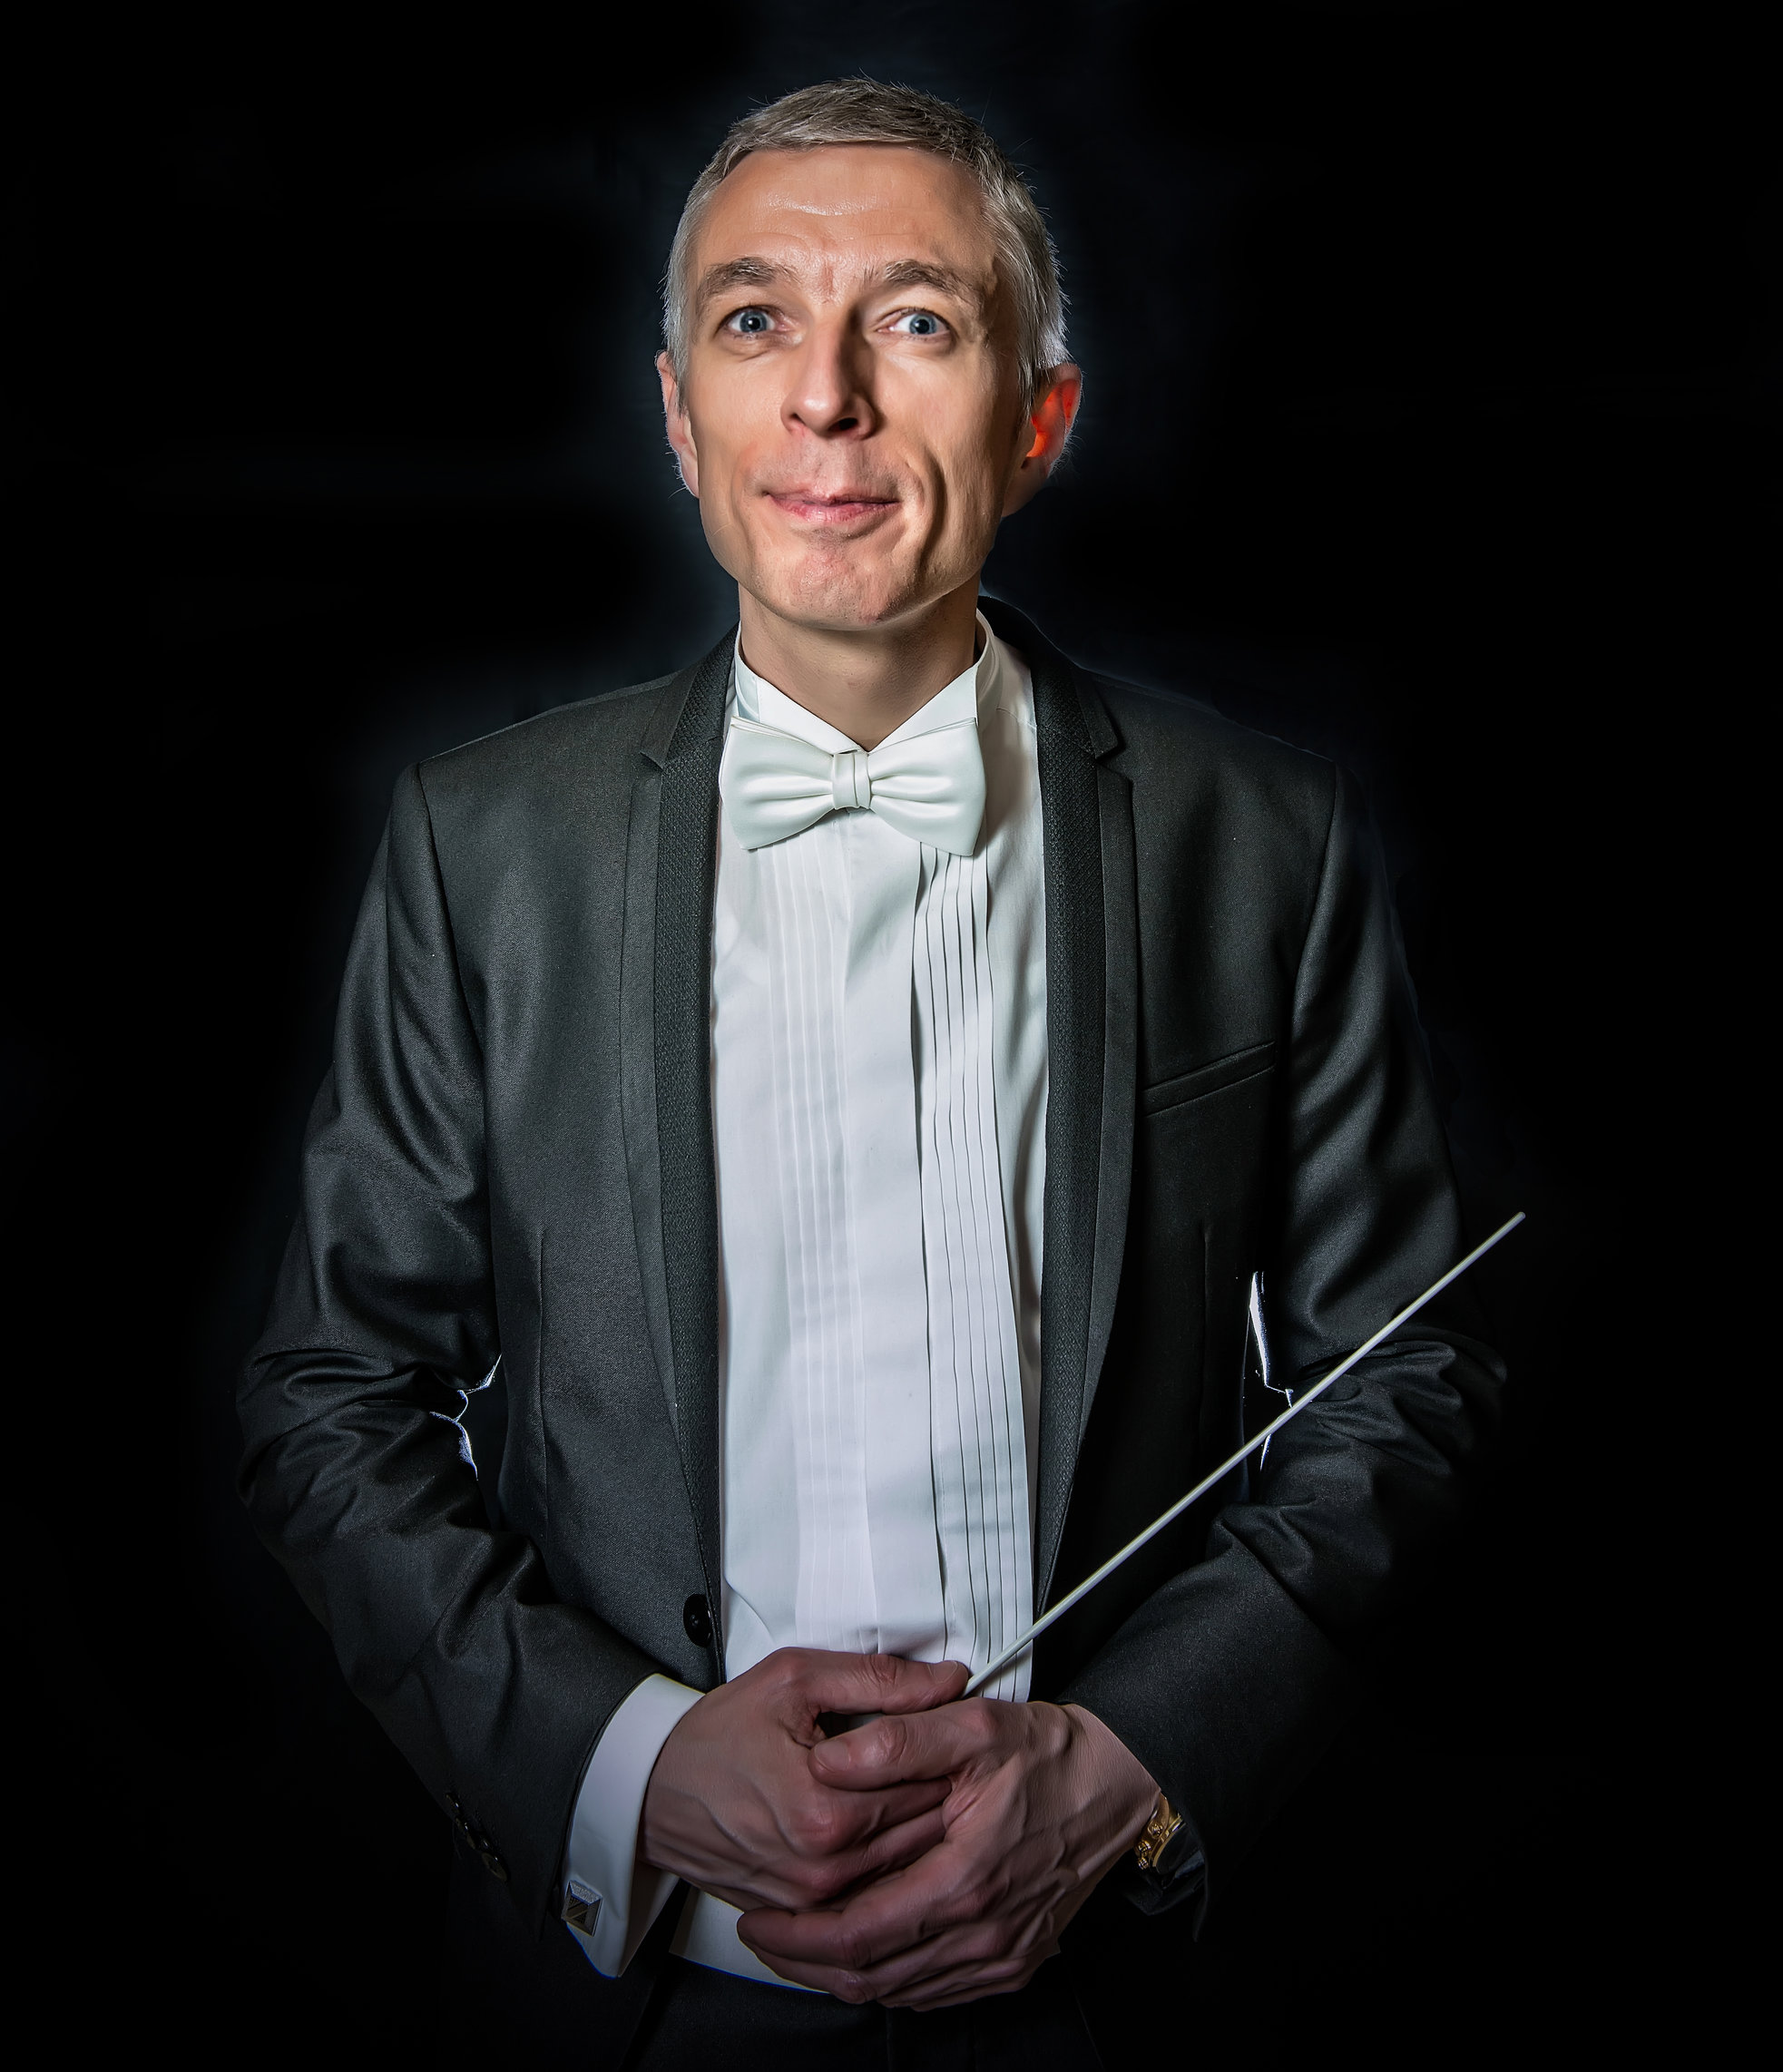 Dirigent Rudy Croon